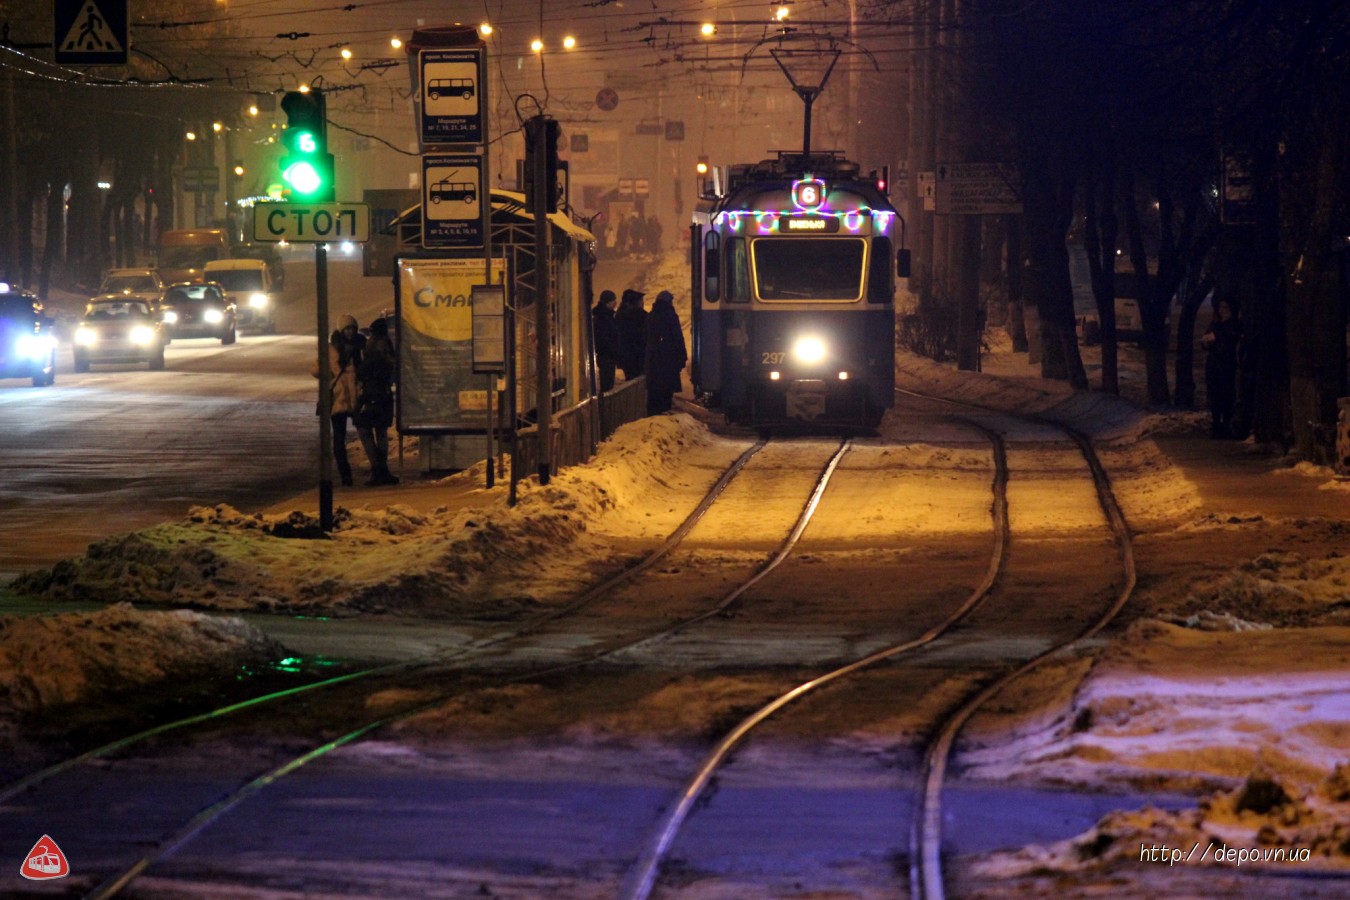 Як працюватиме громадський транспорт Вінниці у новорічну ніч?